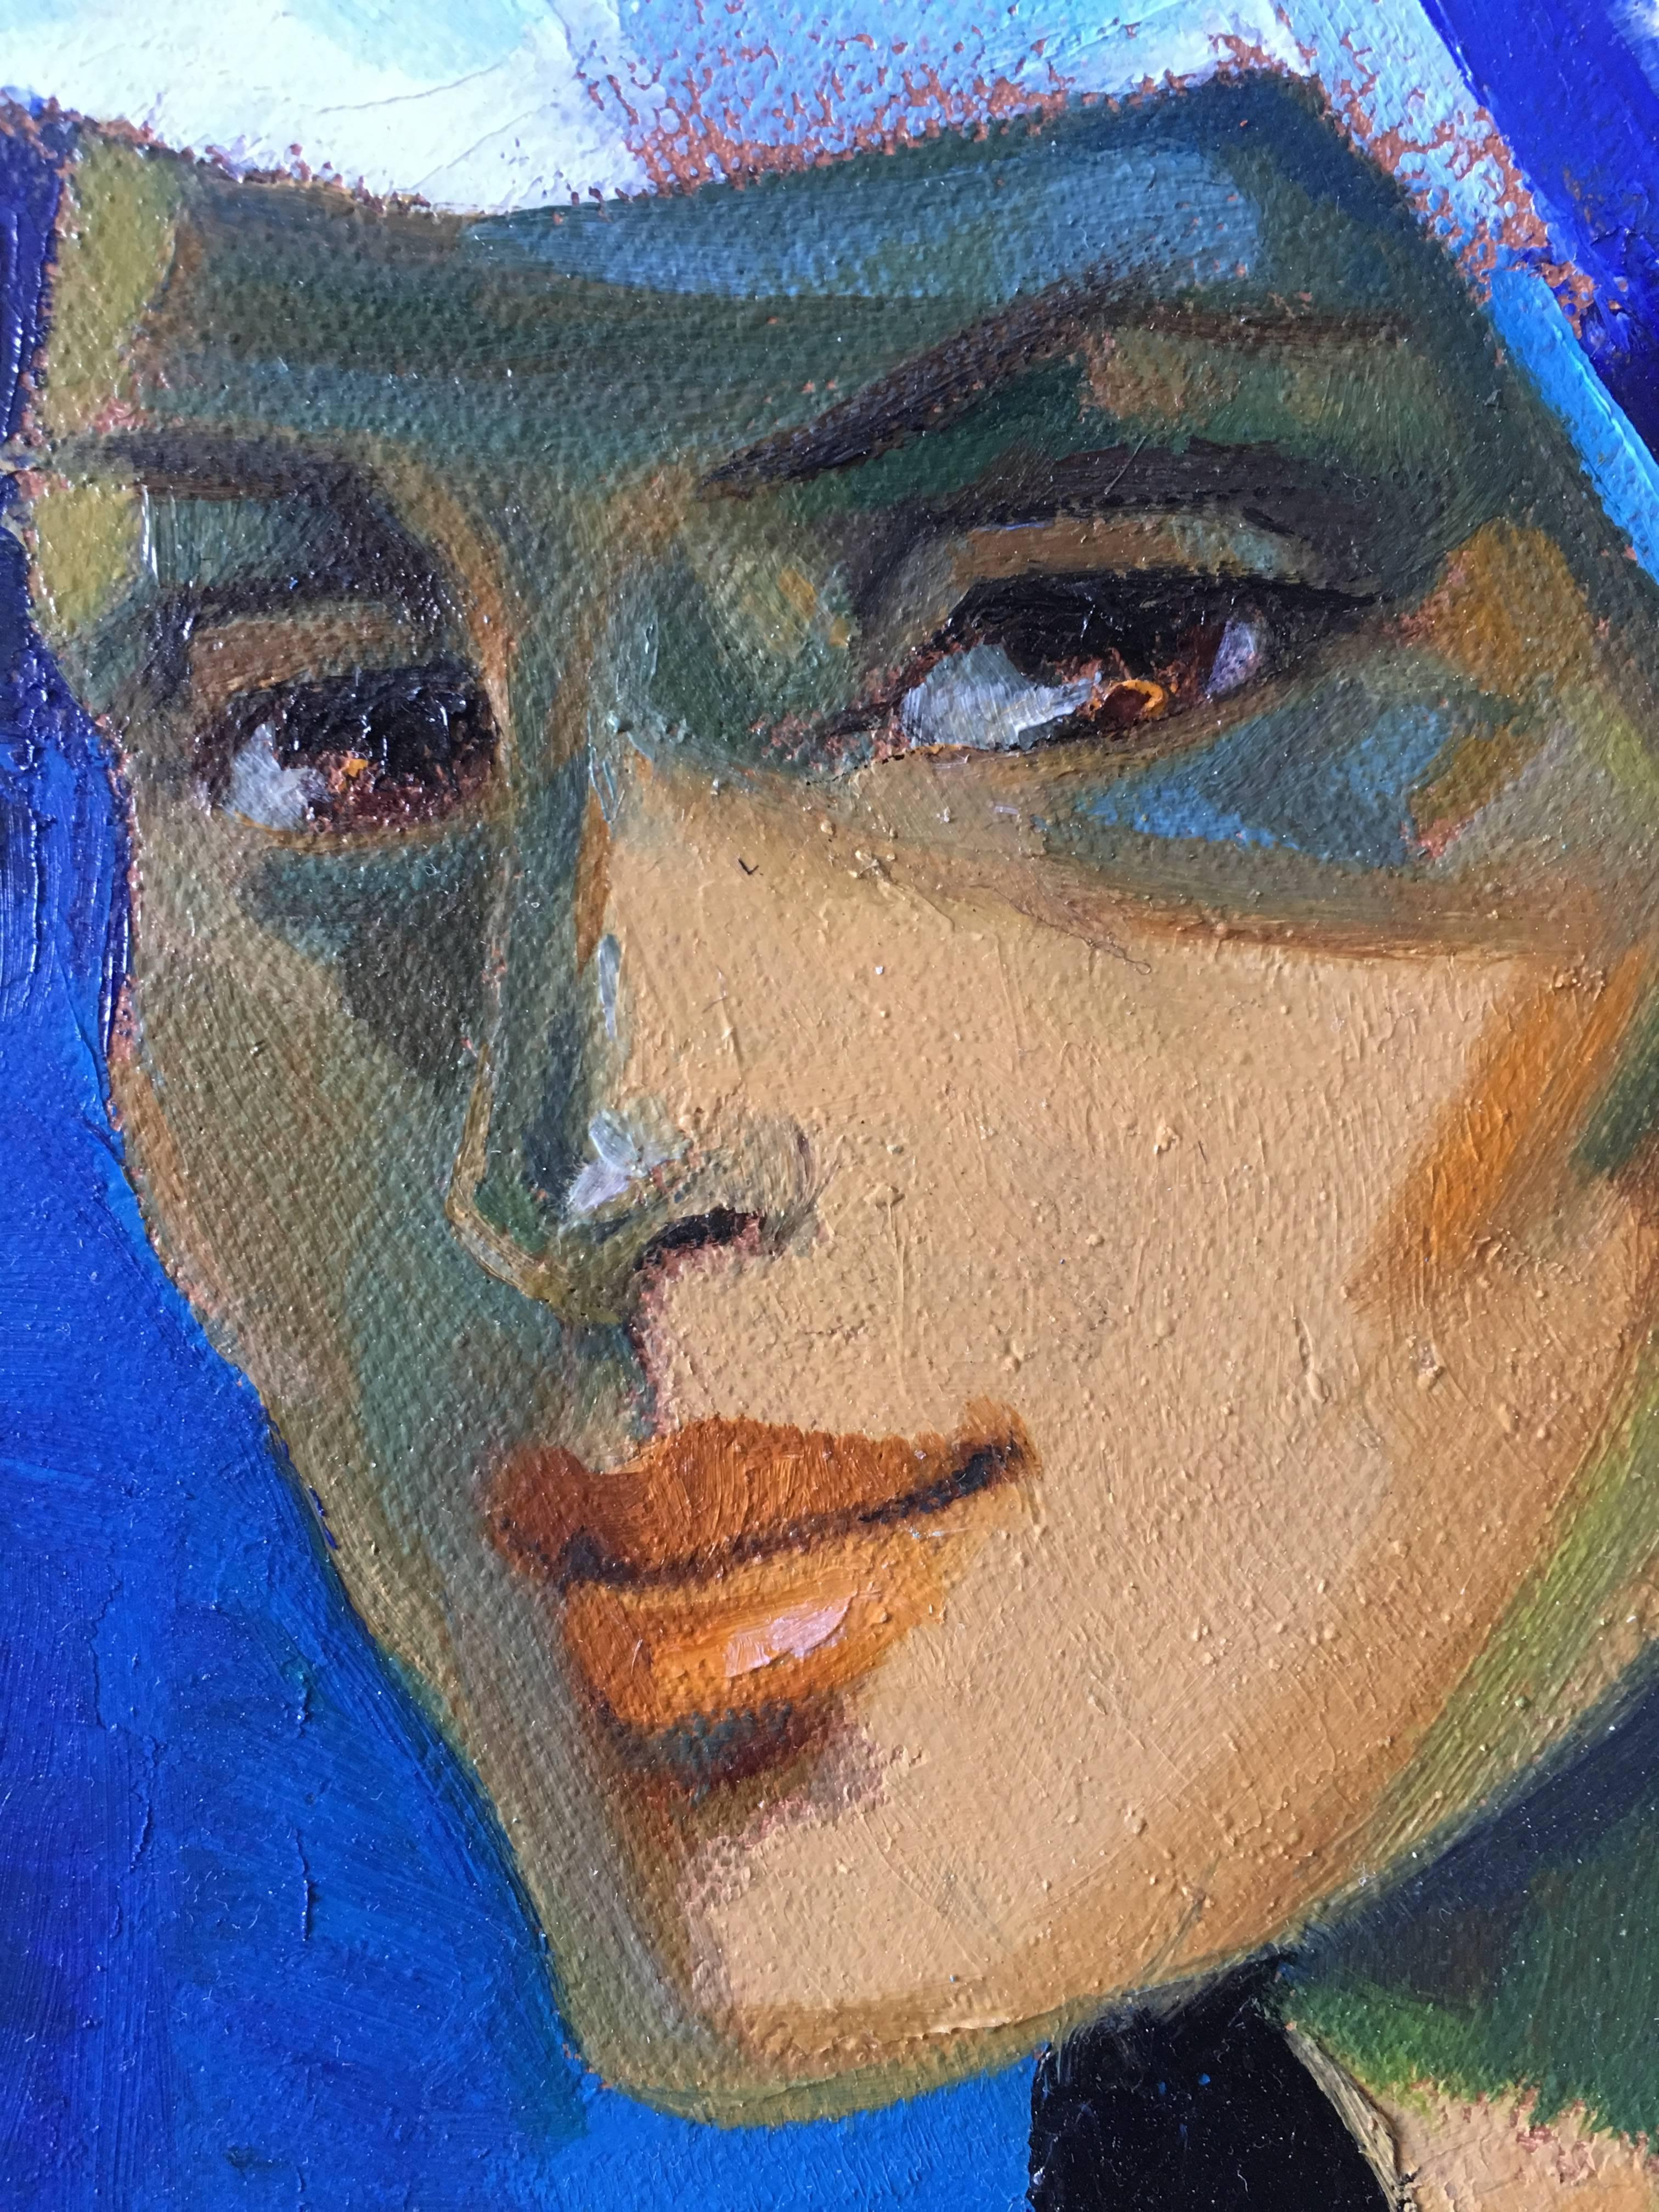 The blue pamela hat, expressionist style  oil painting (Blau), Portrait Painting, von Jori Duran